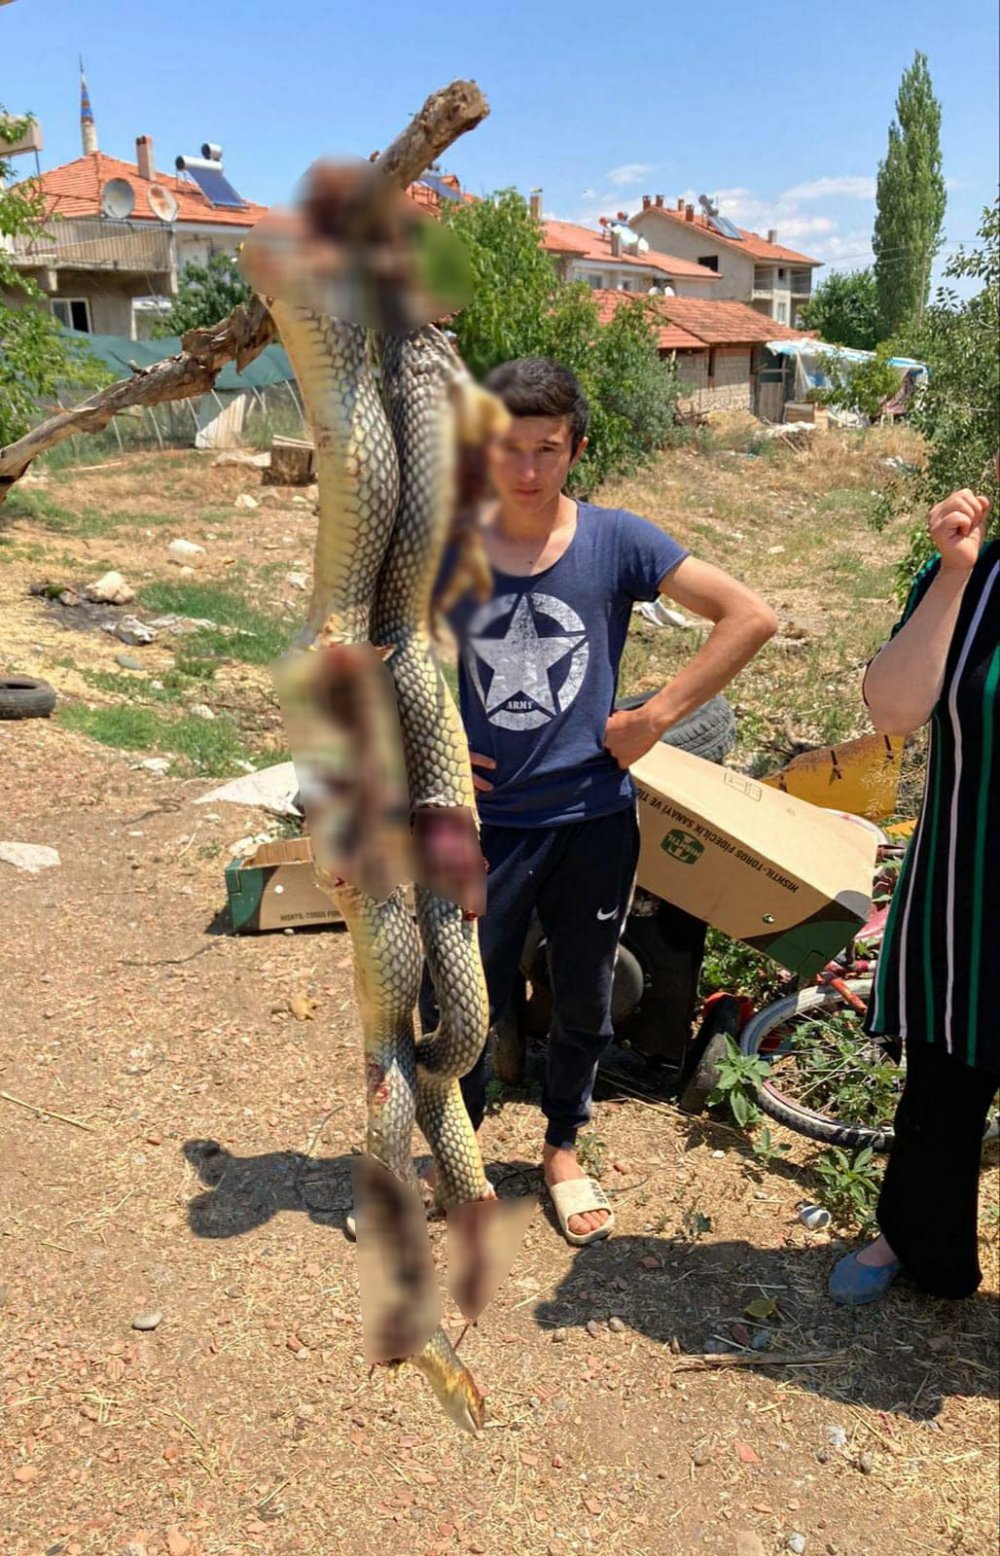 Denizli’nin Acıpayam İlçesinde eve girmek isteyen dev yılan, mahalle sakinleri tarafından öldürüldü. Yılanın boyutu mahalleliyi şaşkına çevirdi.